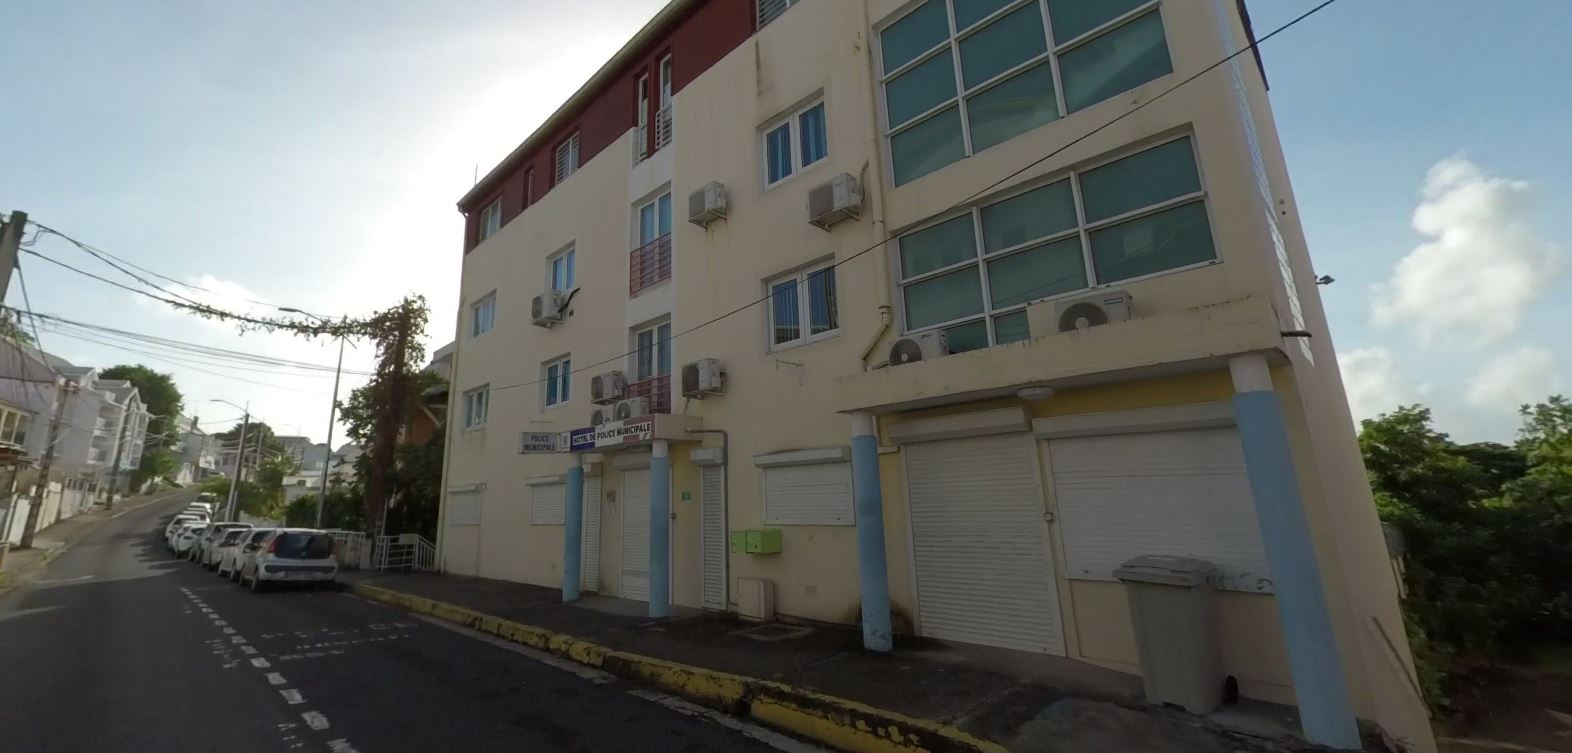 Le Gosier (Guadeloupe). Ce bâtiment abrite la police municipale du Gosier. (illustration) Google street view